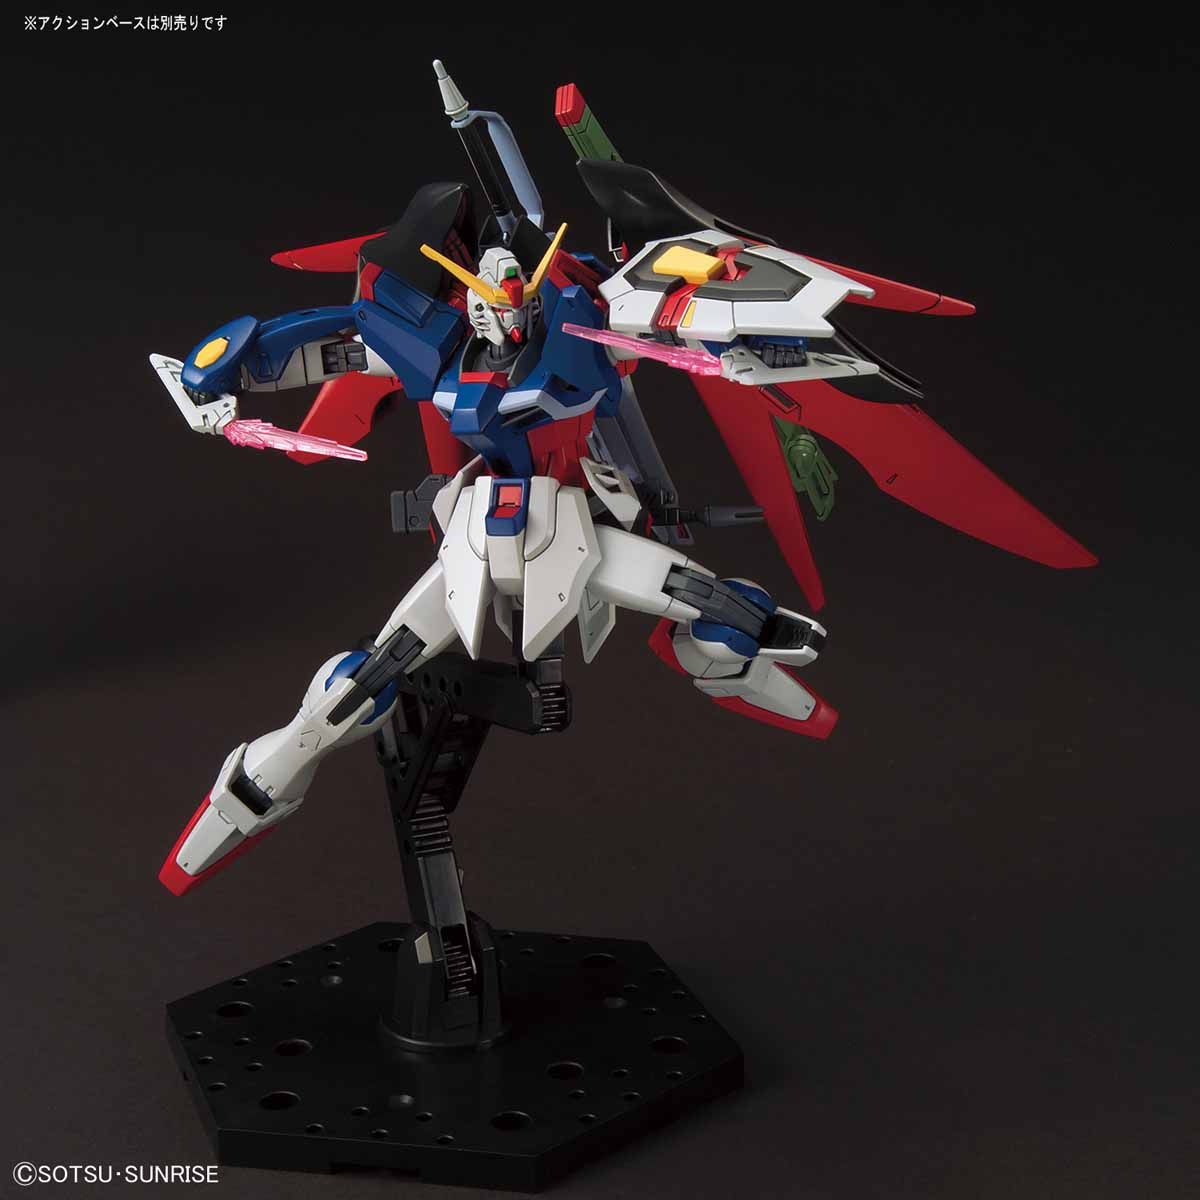 HG 1/144 Destiny Gundam